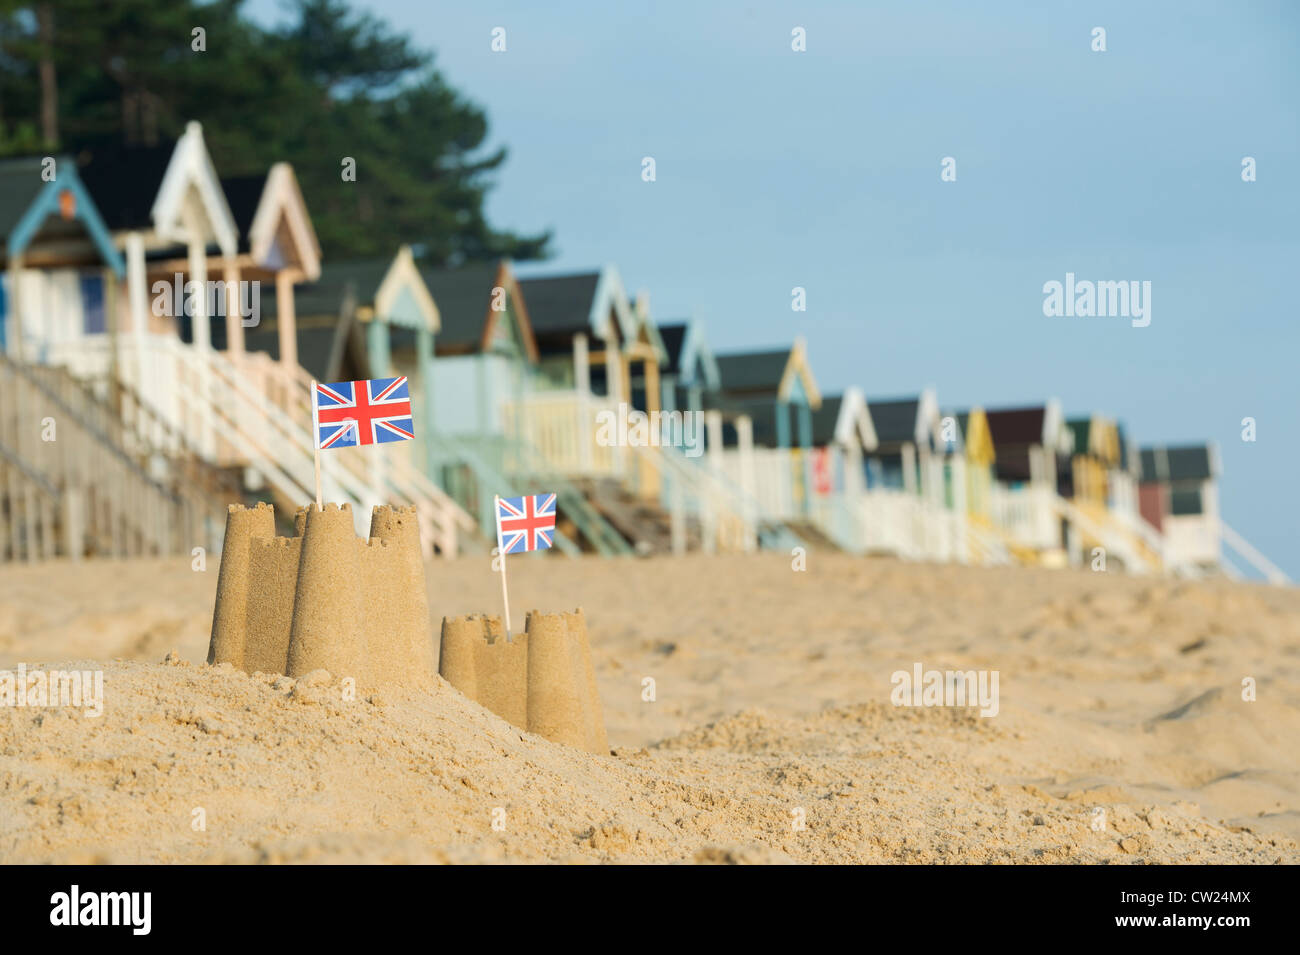 Drapeaux Union Jack dans des châteaux de sable en face de cabines de plage. Wells next the sea. Norfolk, Angleterre Banque D'Images